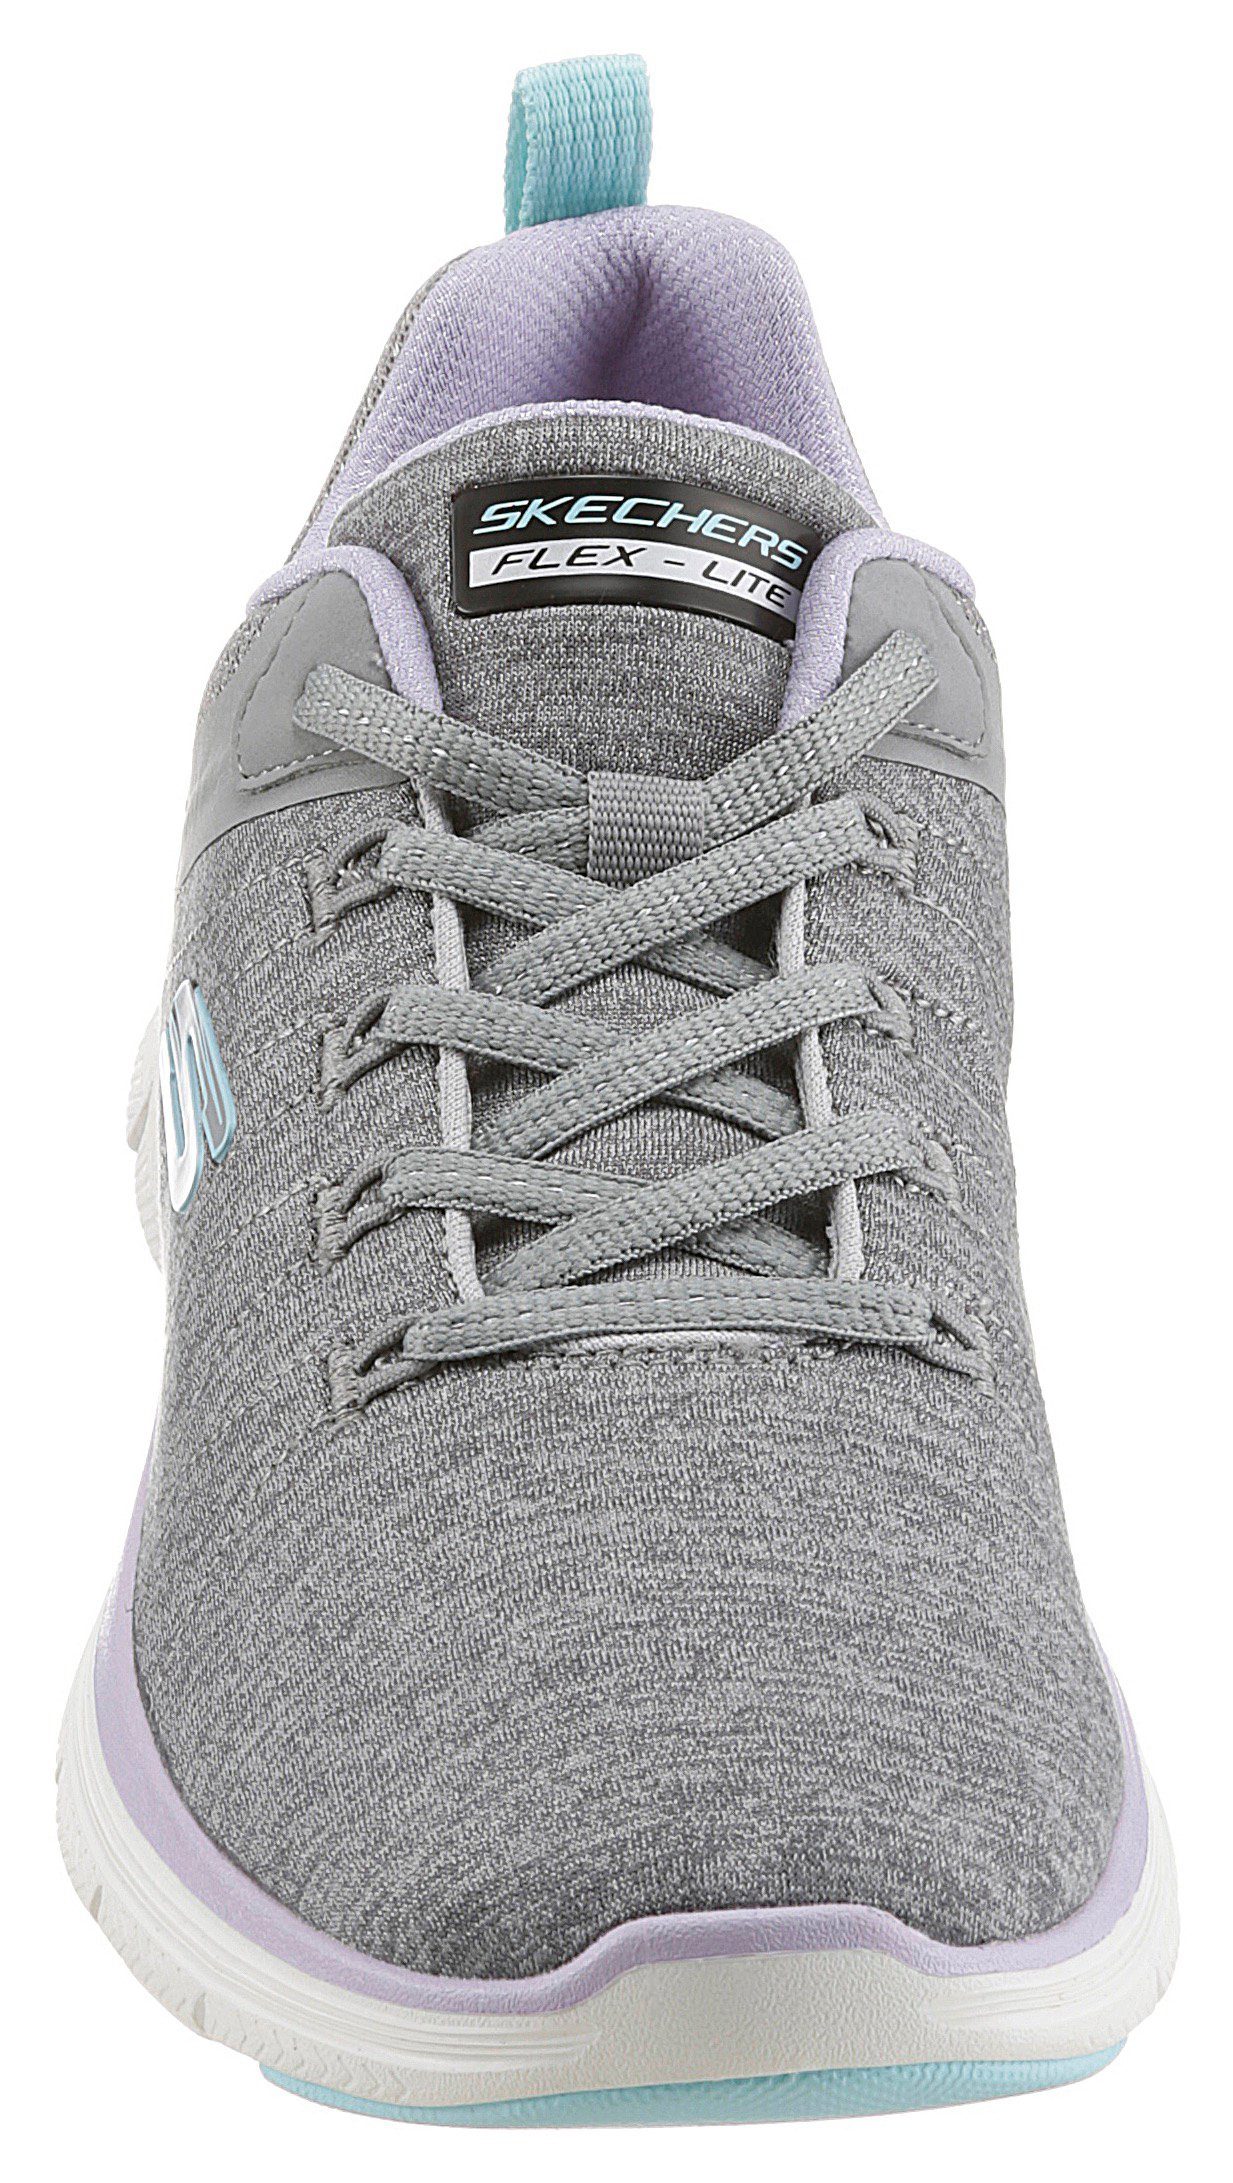 Skechers FLEX APPEAL 4.0 Maschinenwäsche geeignet VIEW - Sneaker BRILLIANT für grau-flieder-türkis